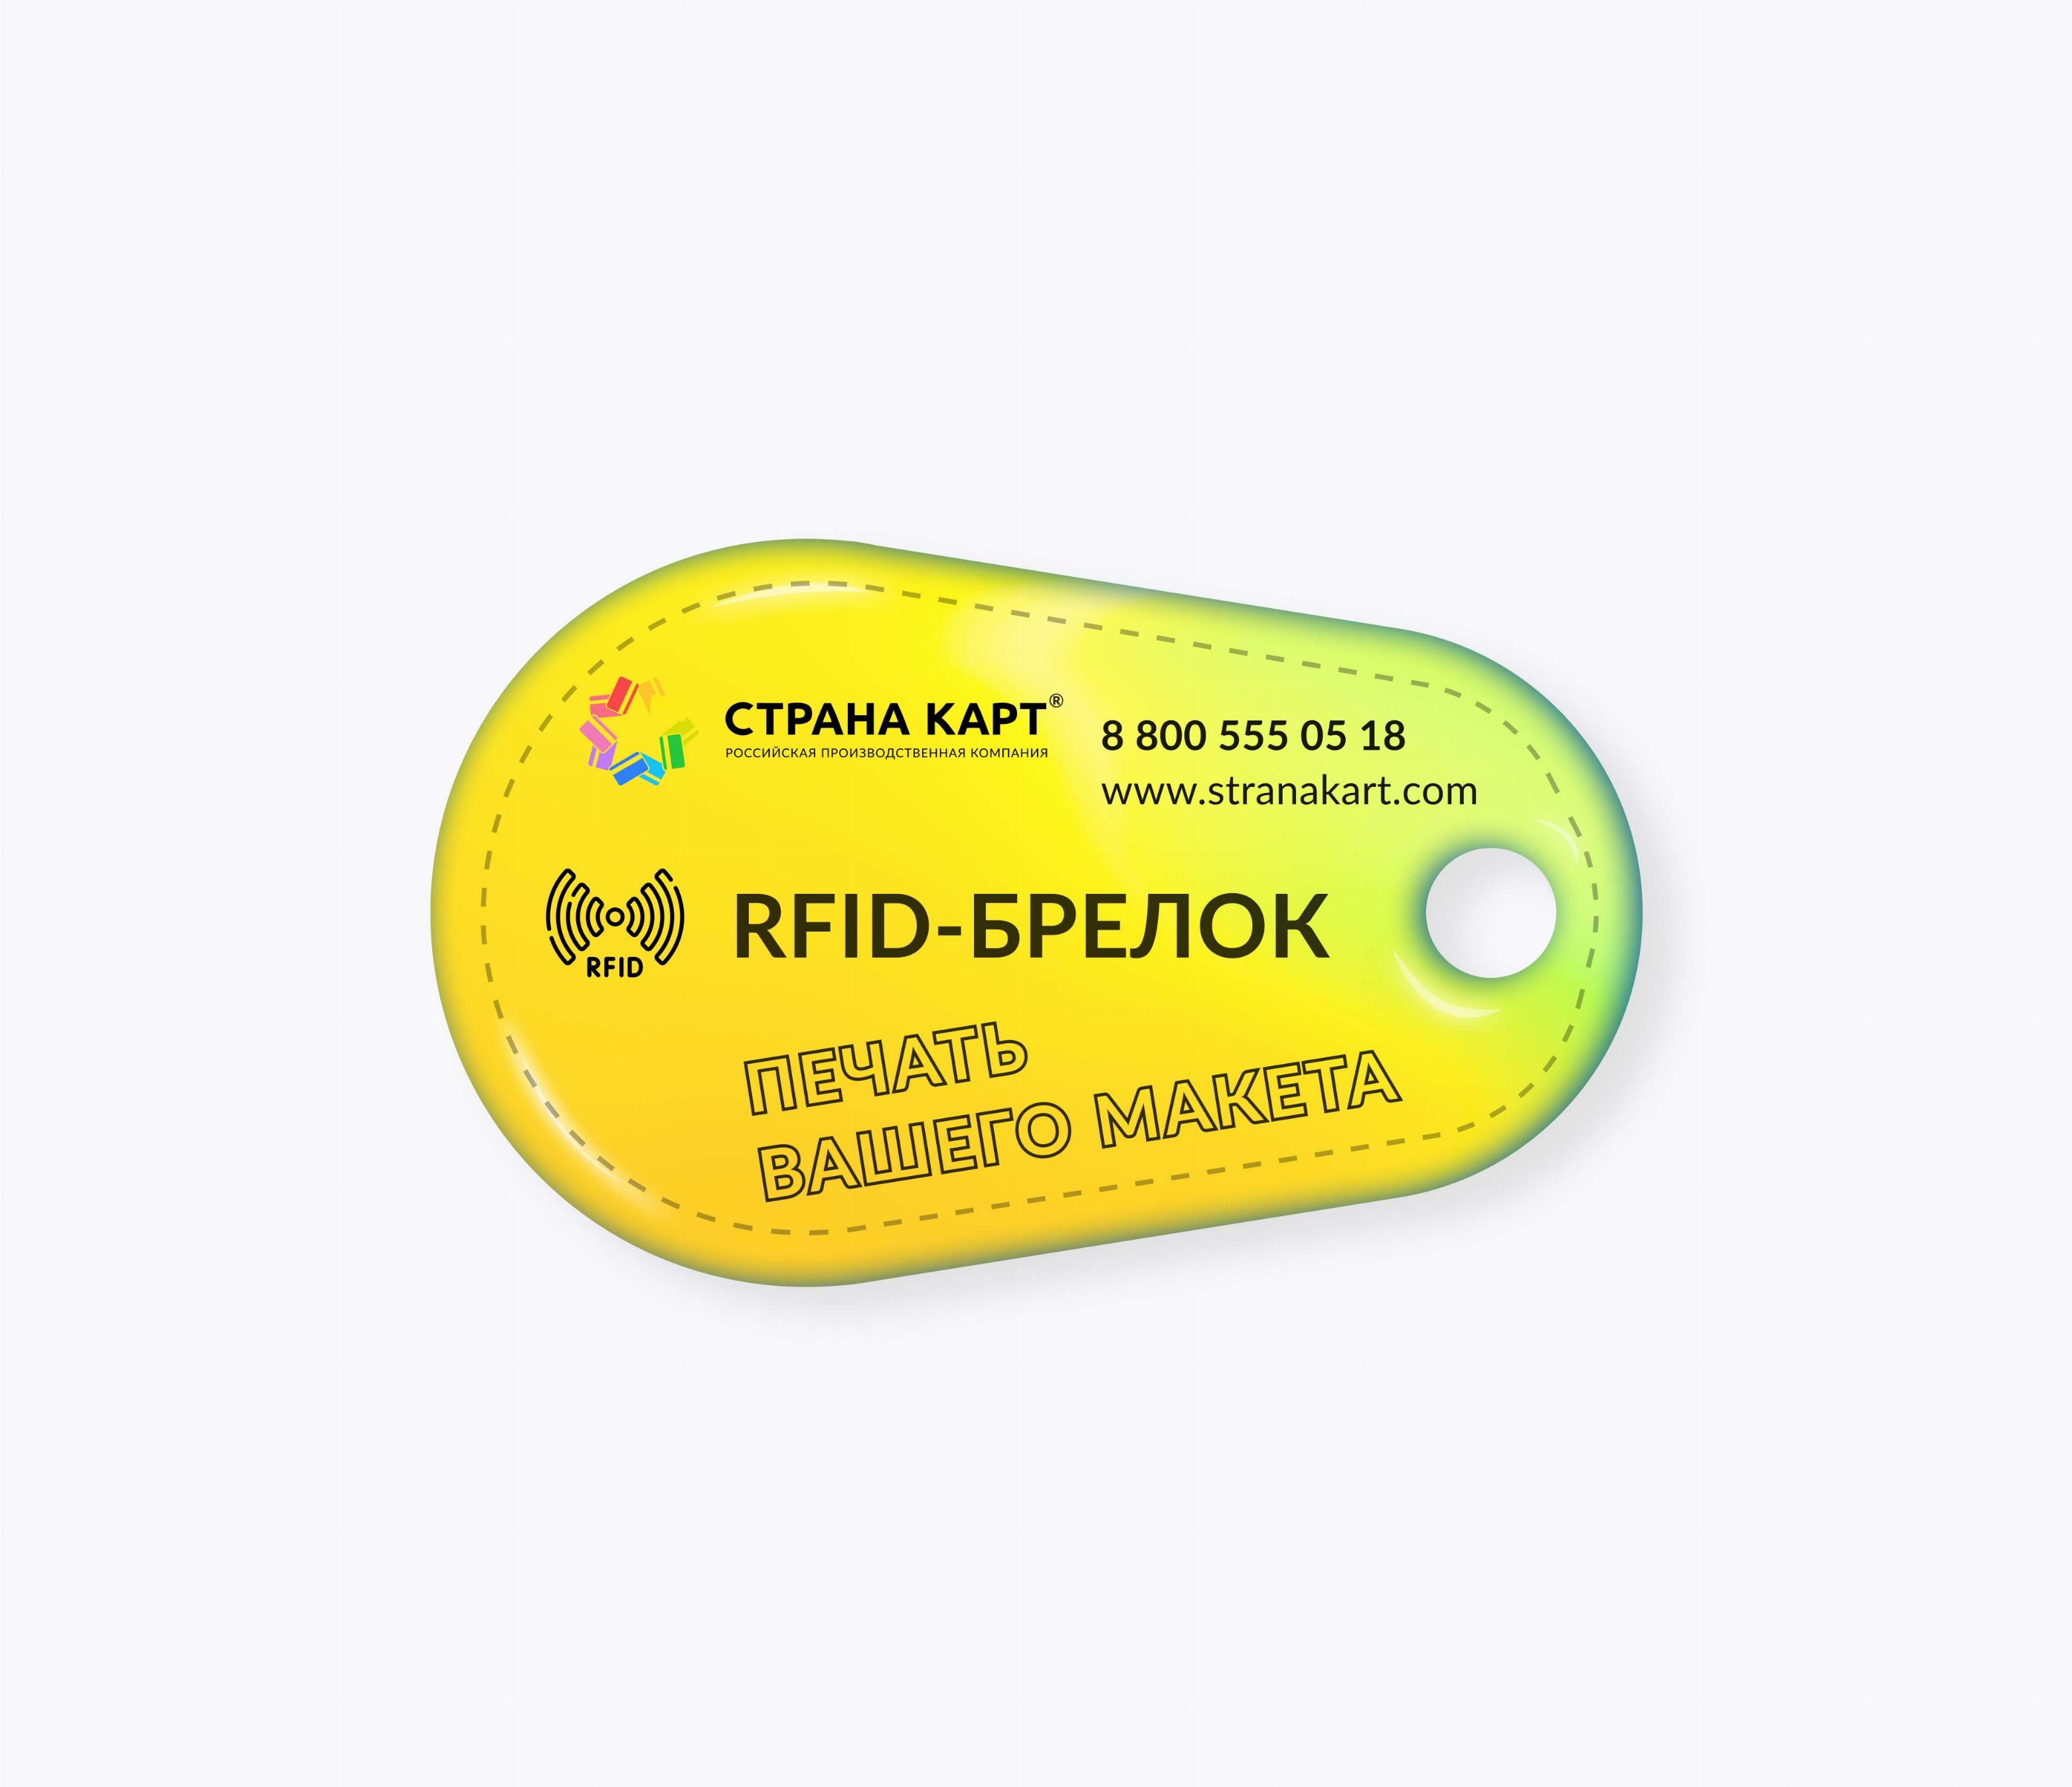 Каплевидные RFID-брелоки NEOKEY® с чипом NXP MIFARE Classic 1k 7 byte UID RFID-брелоки NEOKEY® с чипом NXP MIFARE Classic 1k 7 byte UID и вашим логотипом